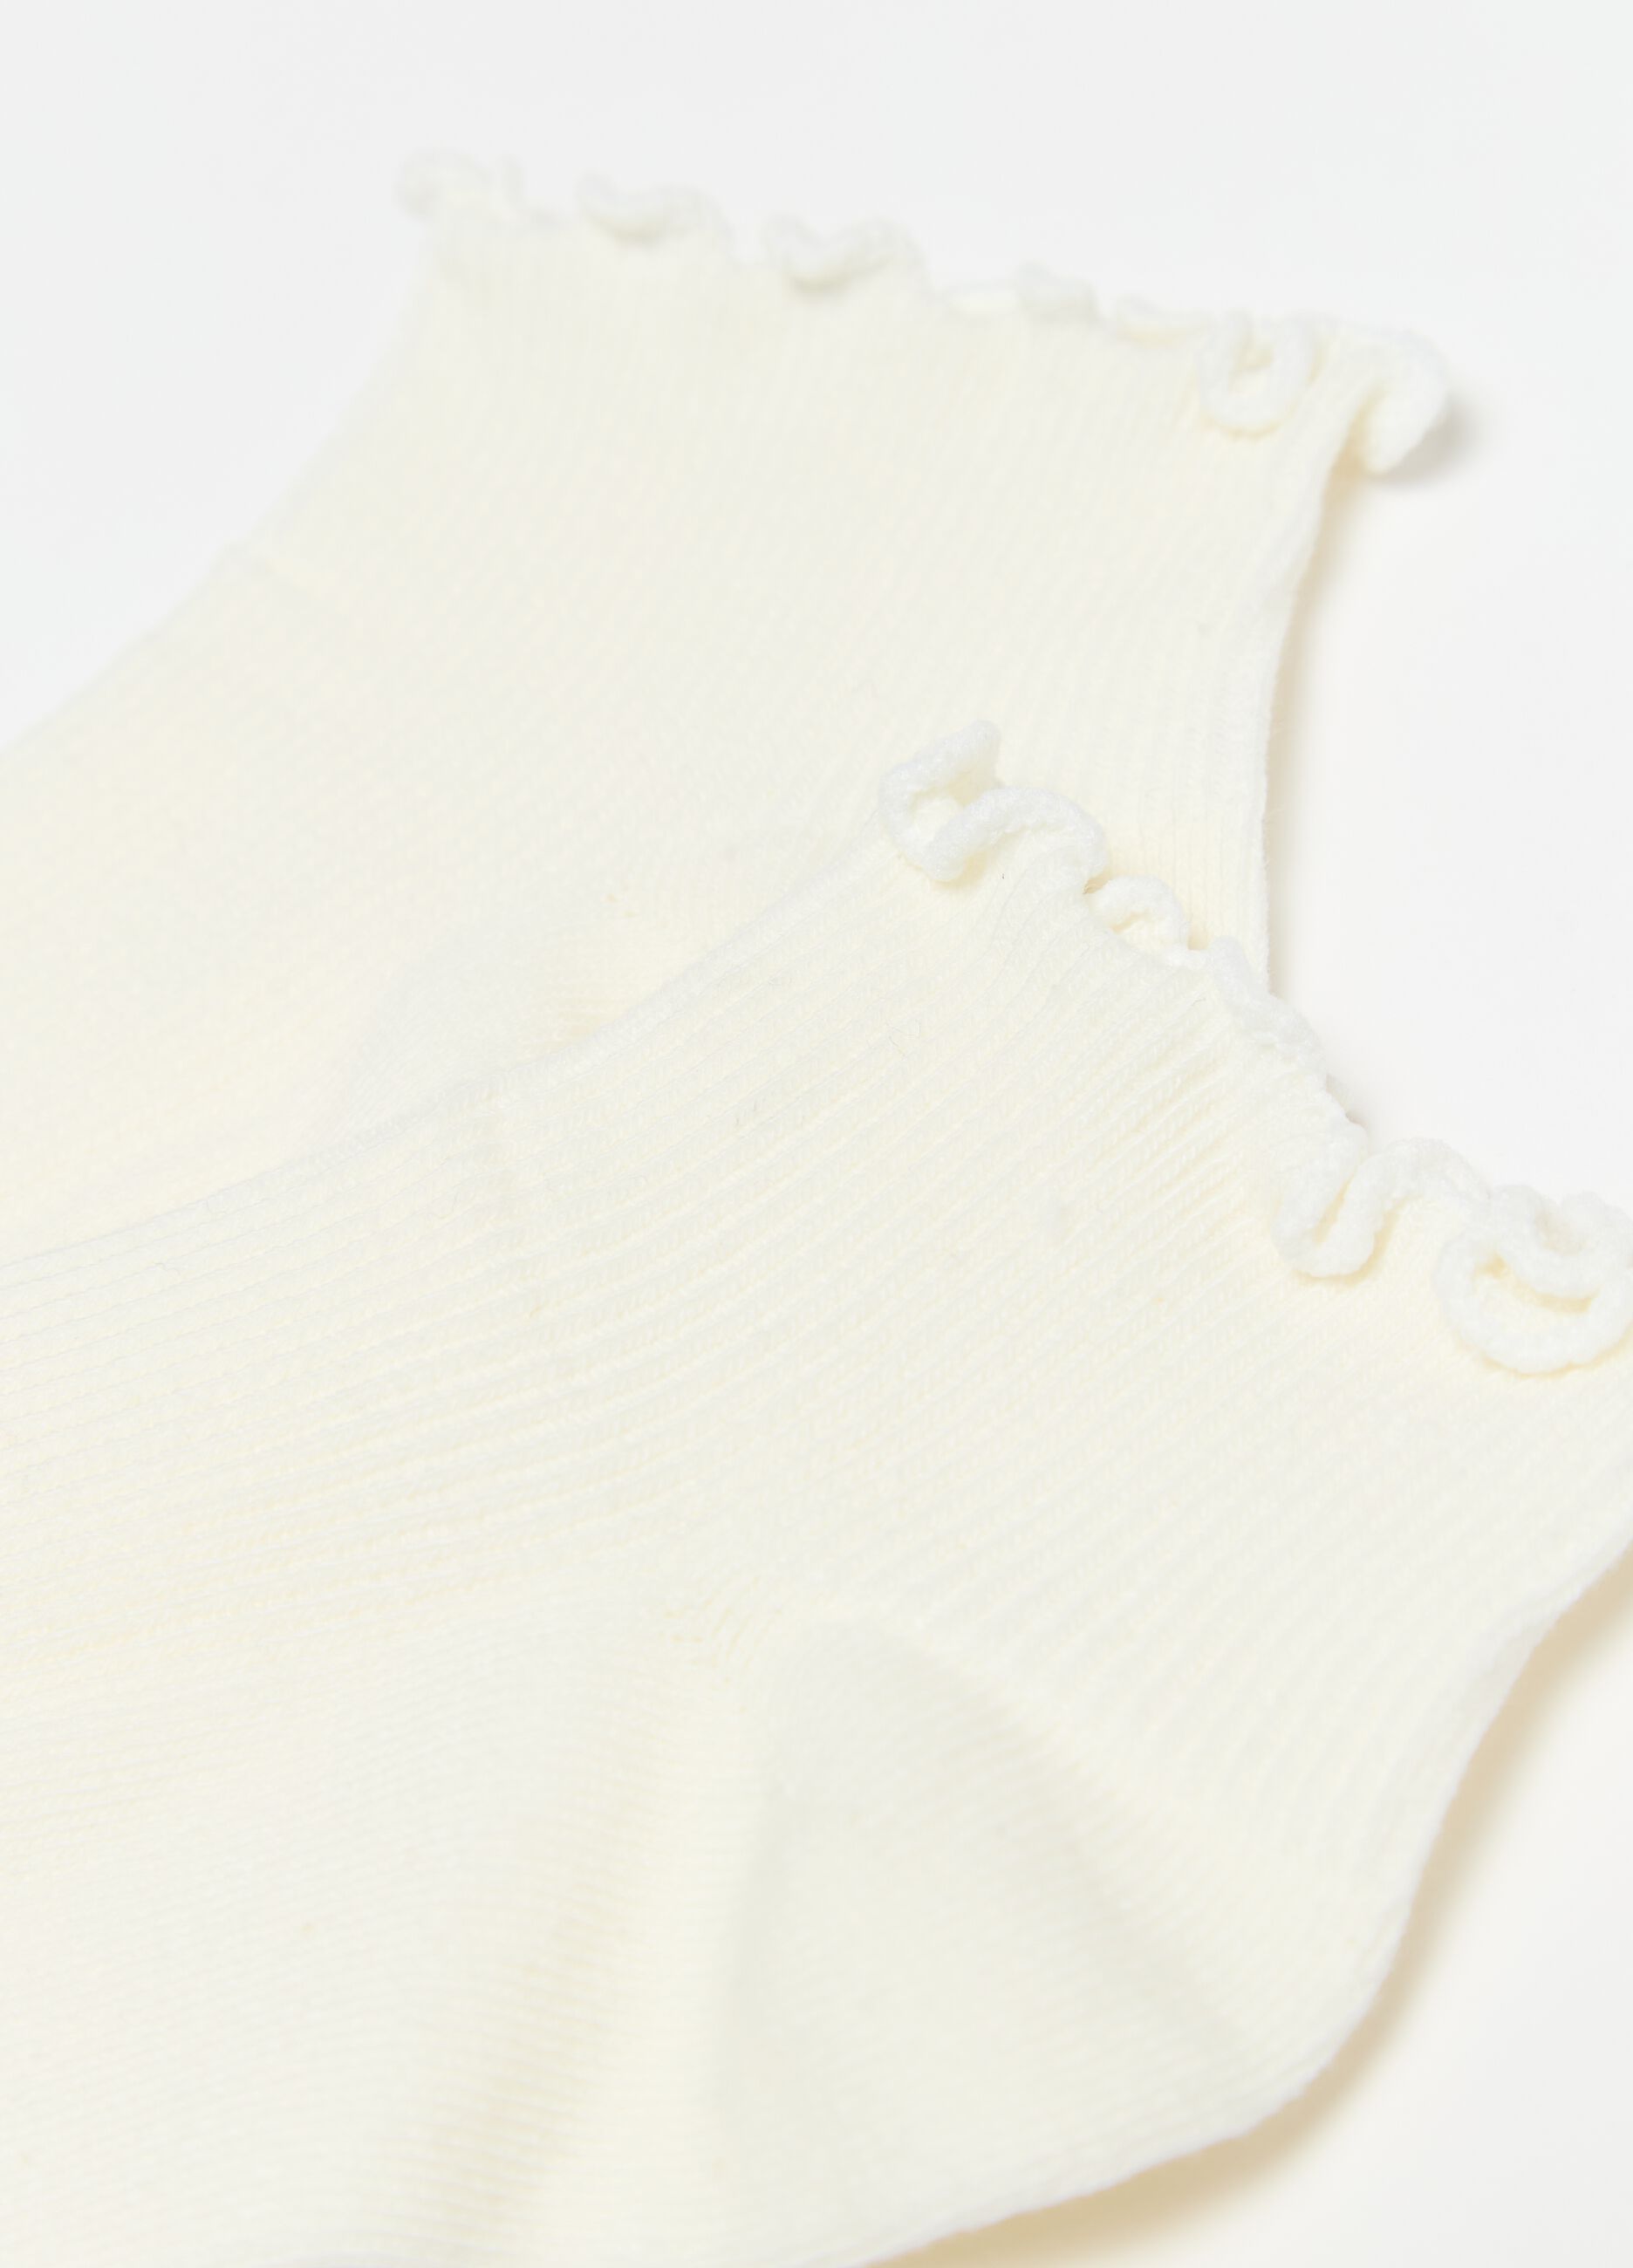 Pack tres calcetines cortos de algodón orgánico